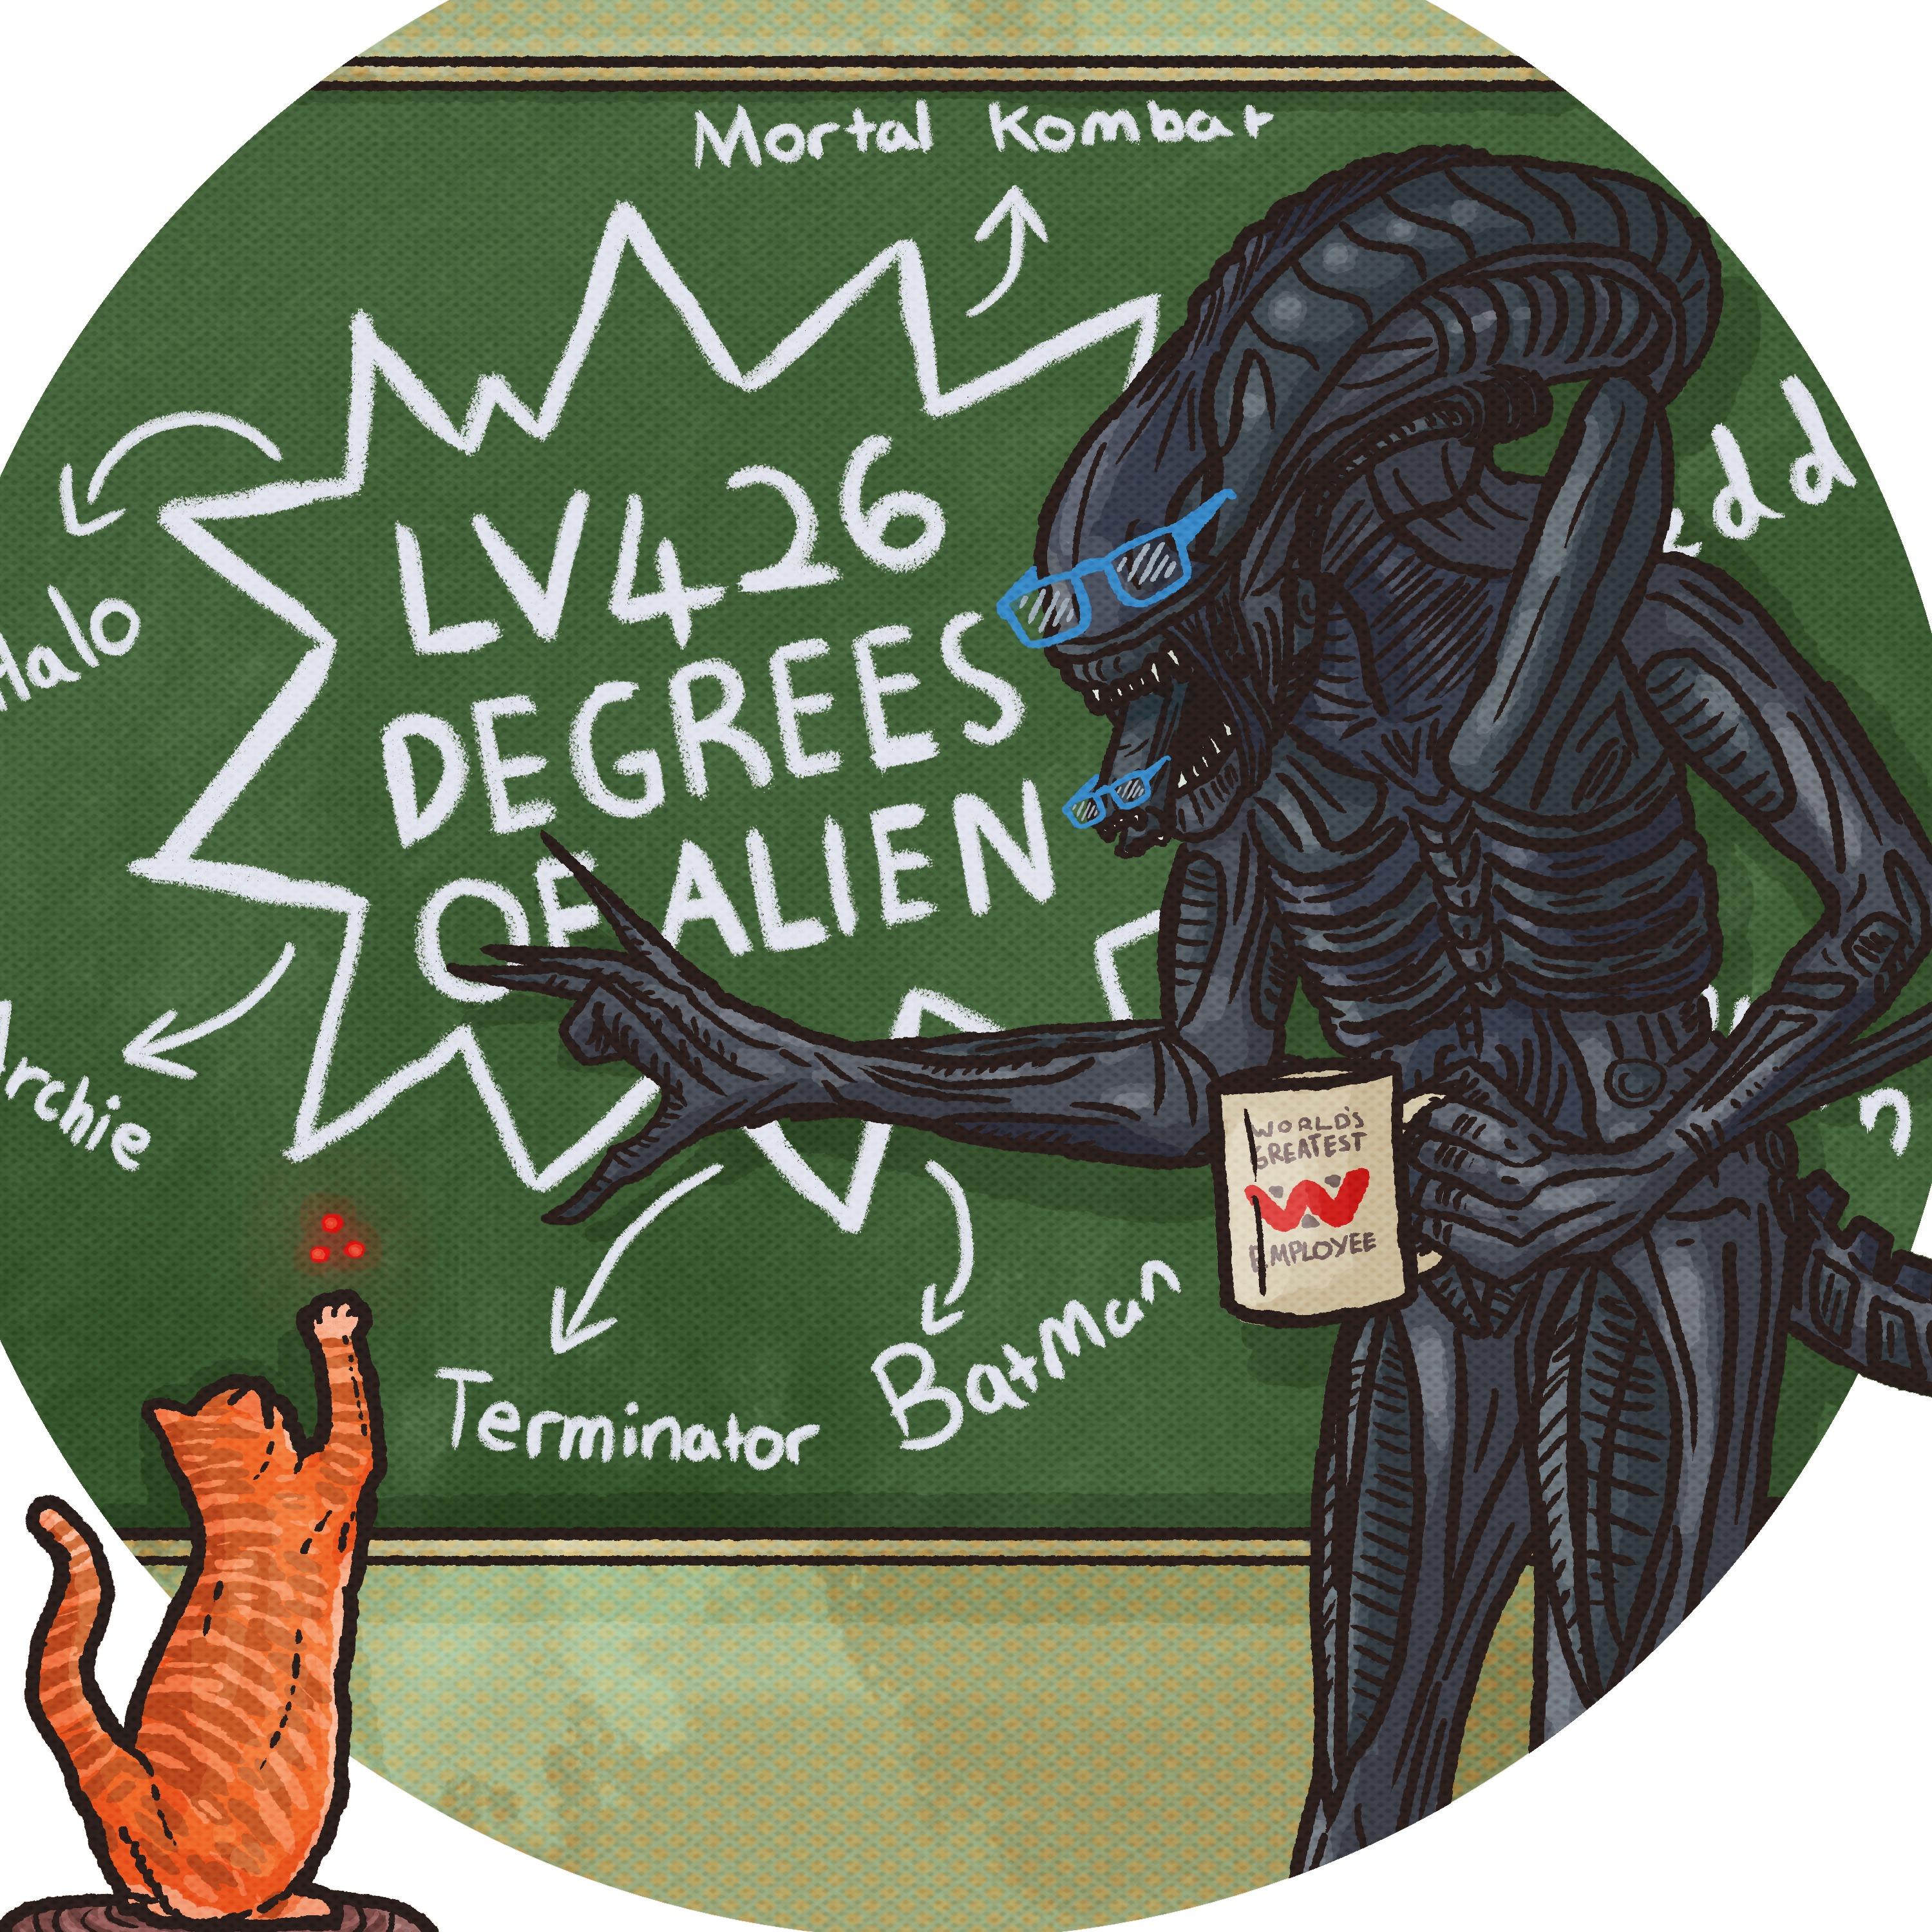 LV426 Degrees of Alien